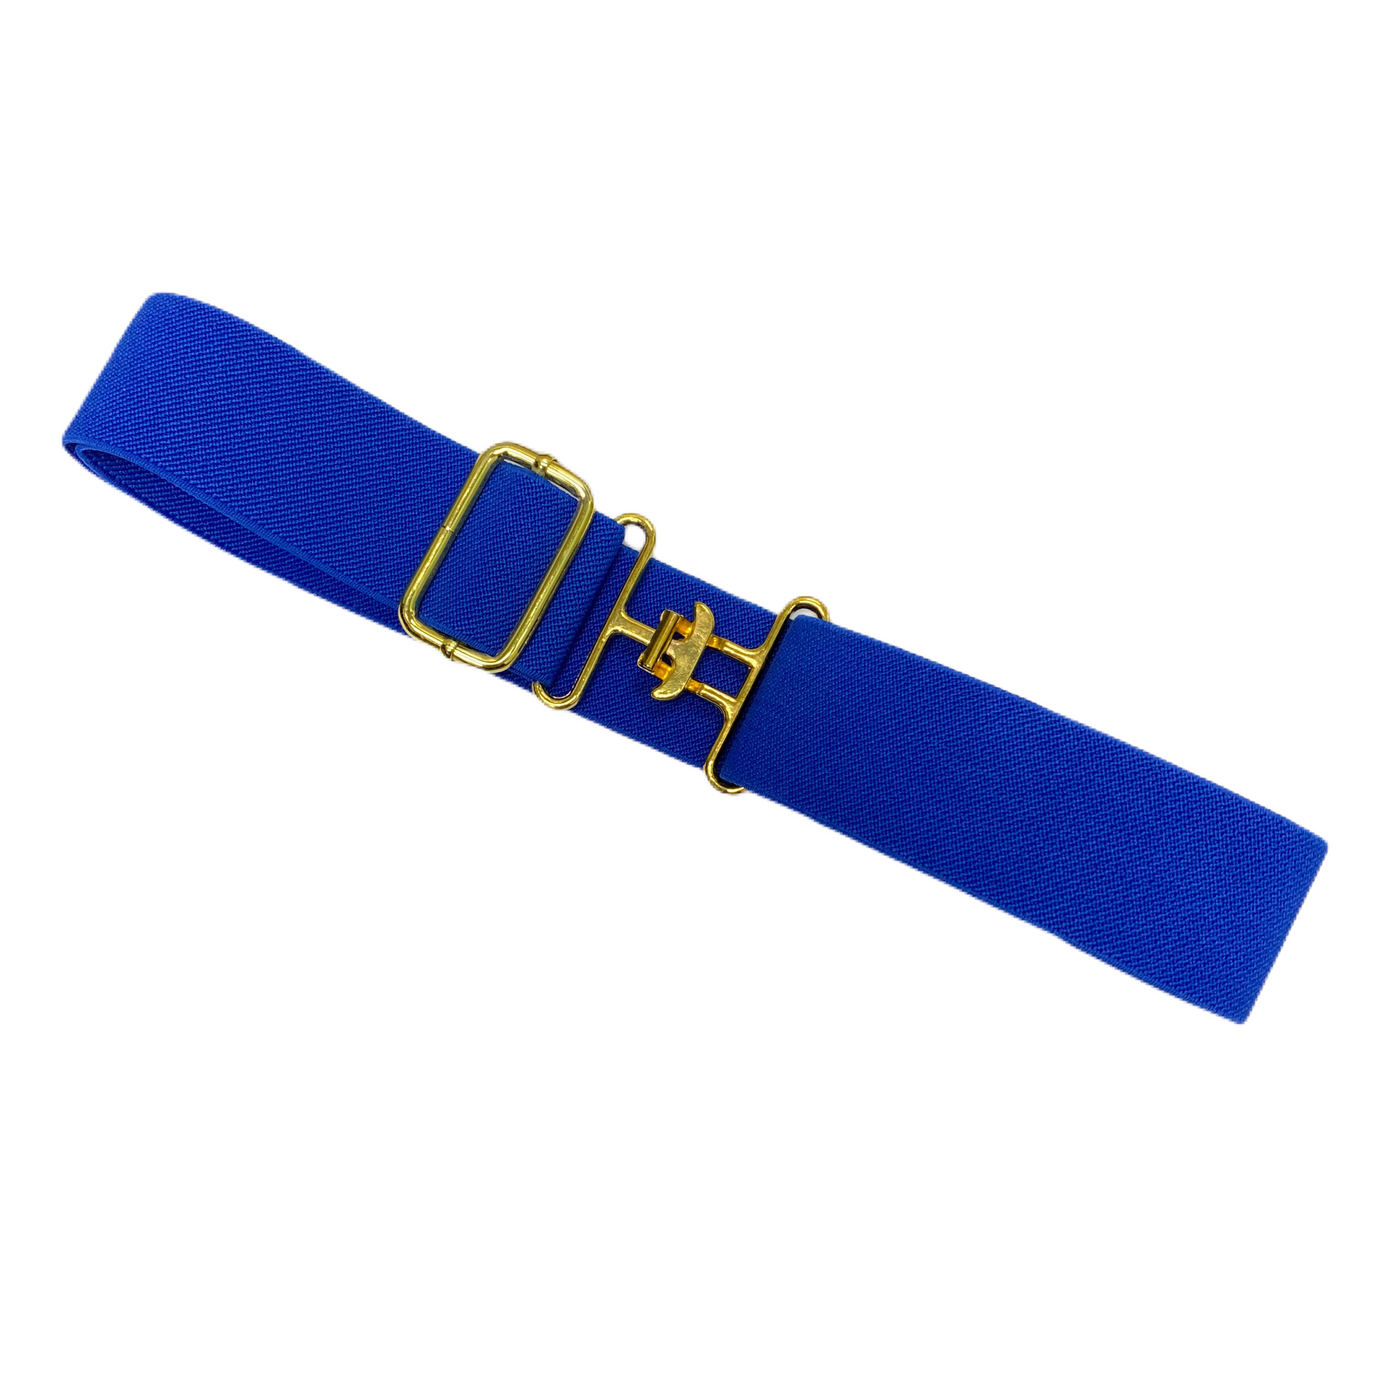 SALE Kathryn Lily Adjustable Belt - Blue